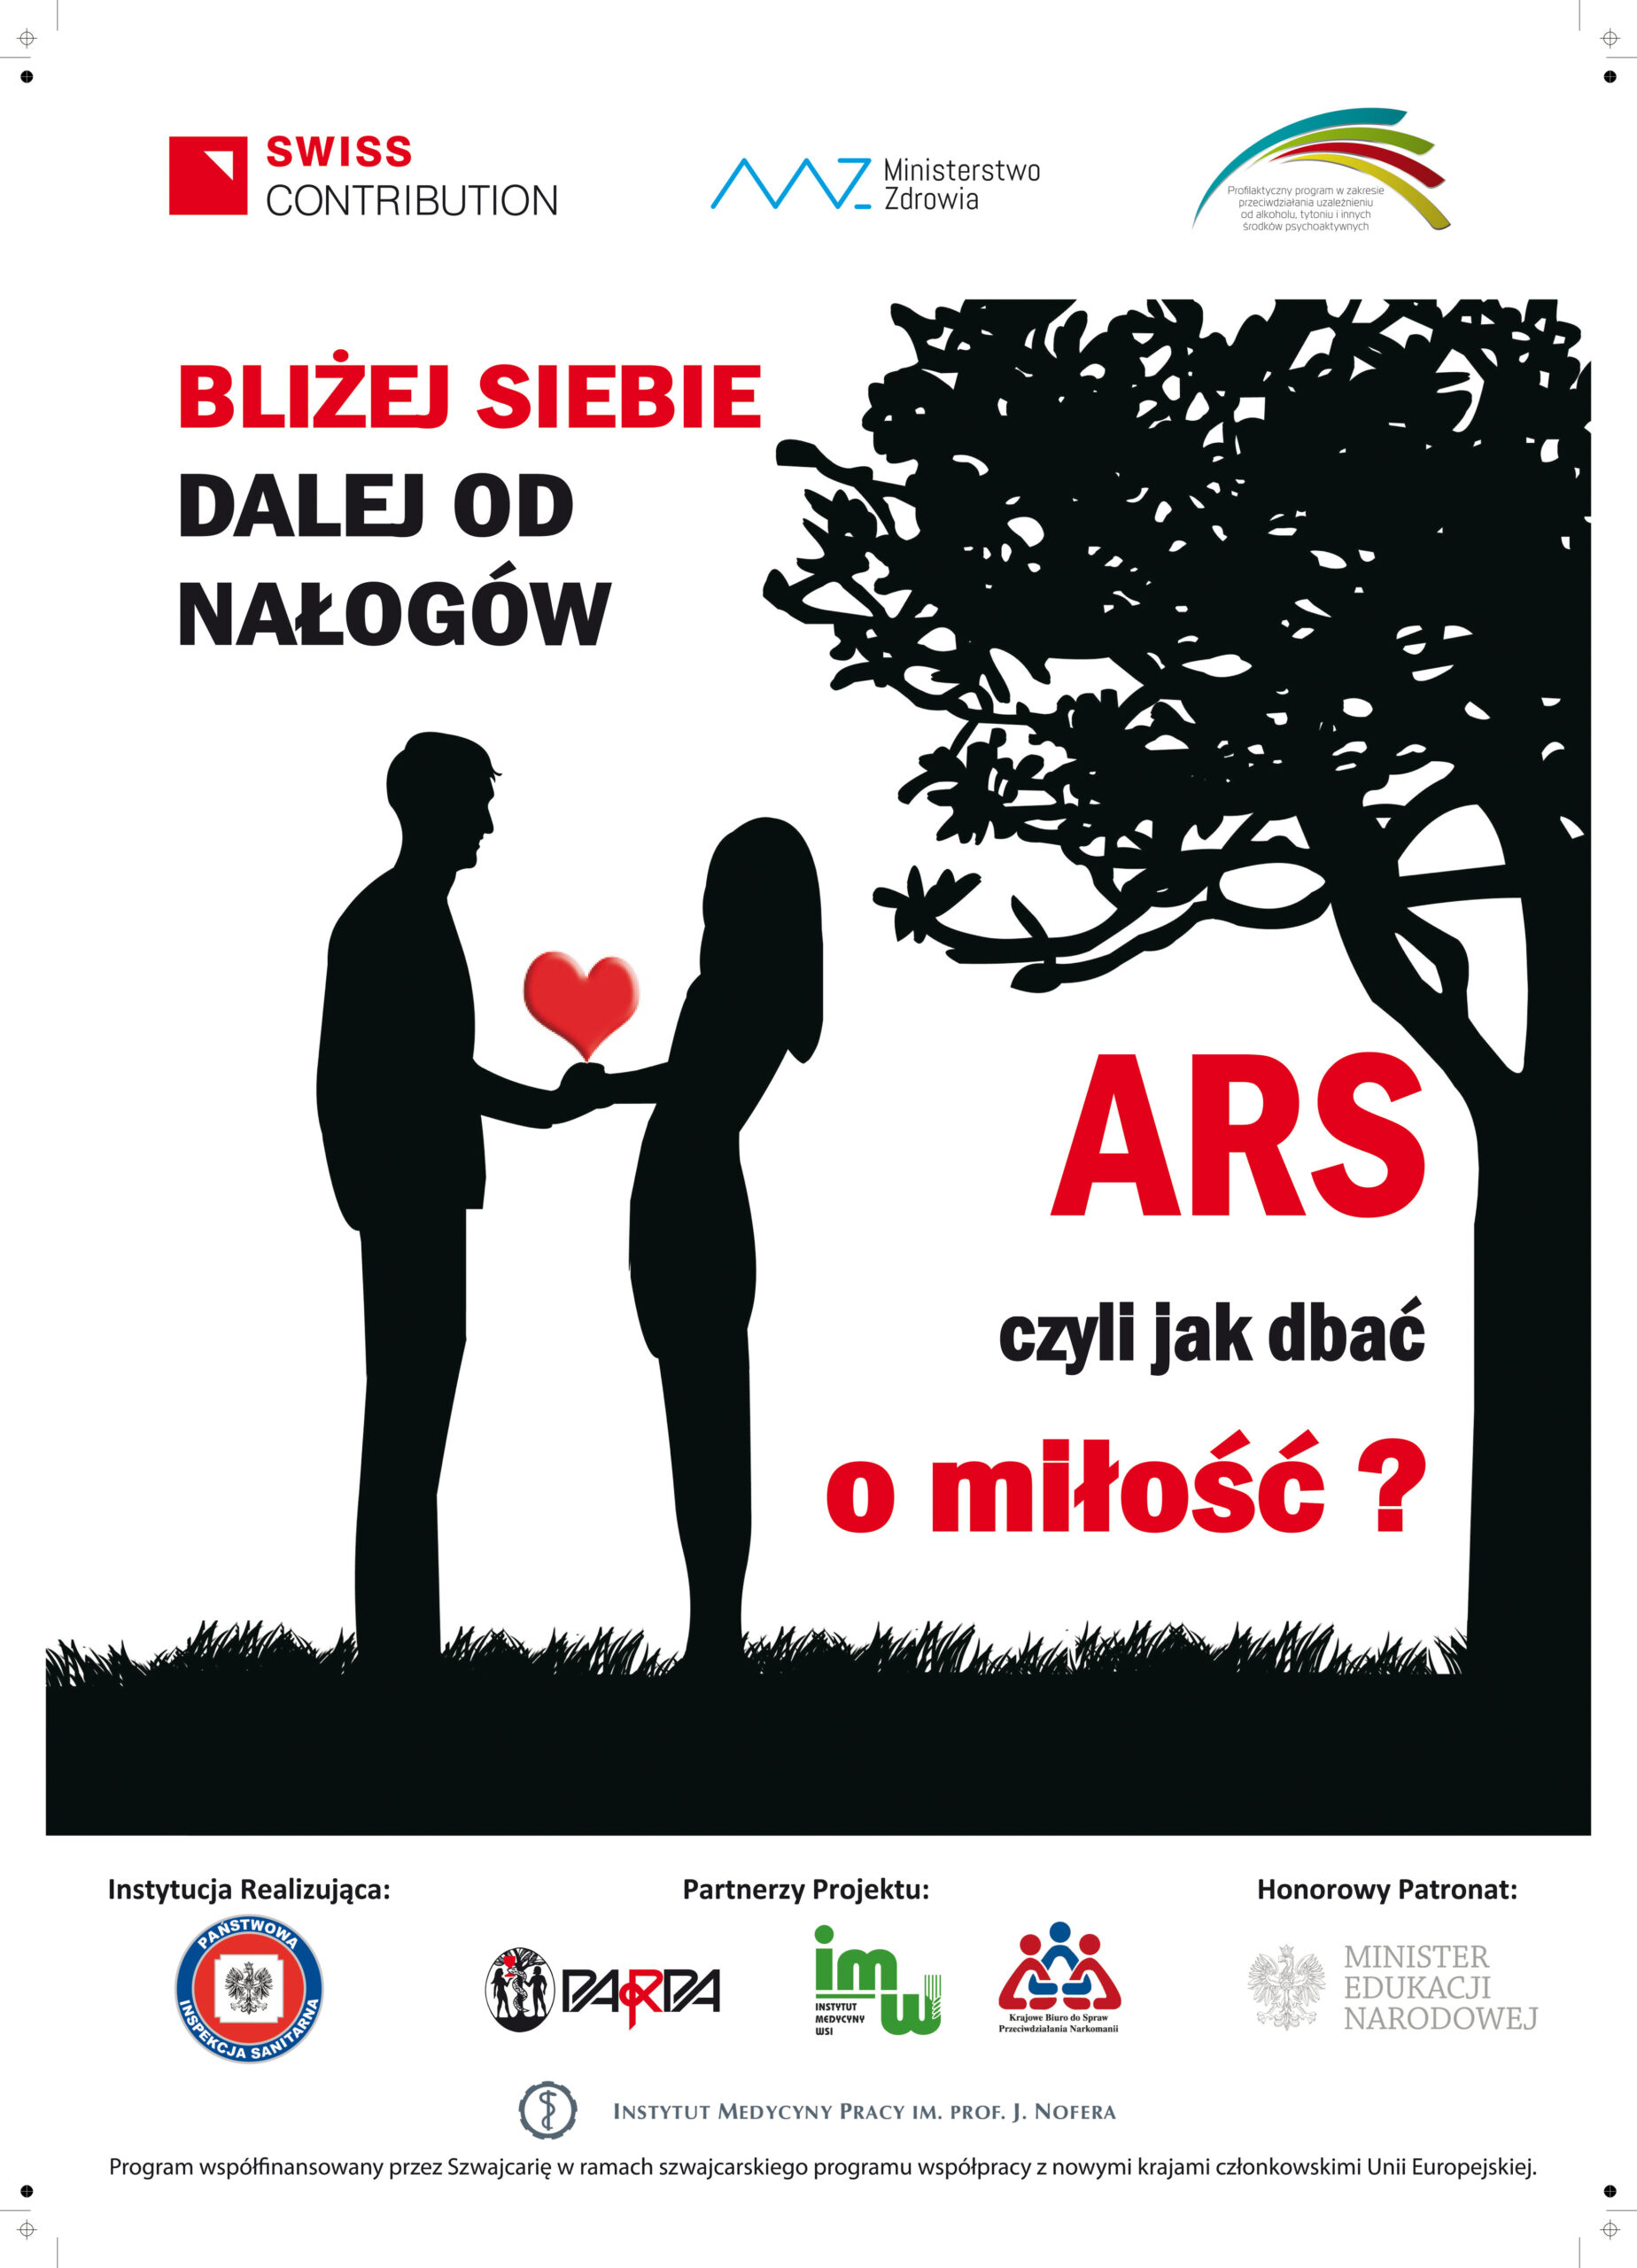 „ARS, czyli jak dbać o miłość?” – nowoczesna edukacja dla młodzieży z zakresu profilaktyki uzależnień